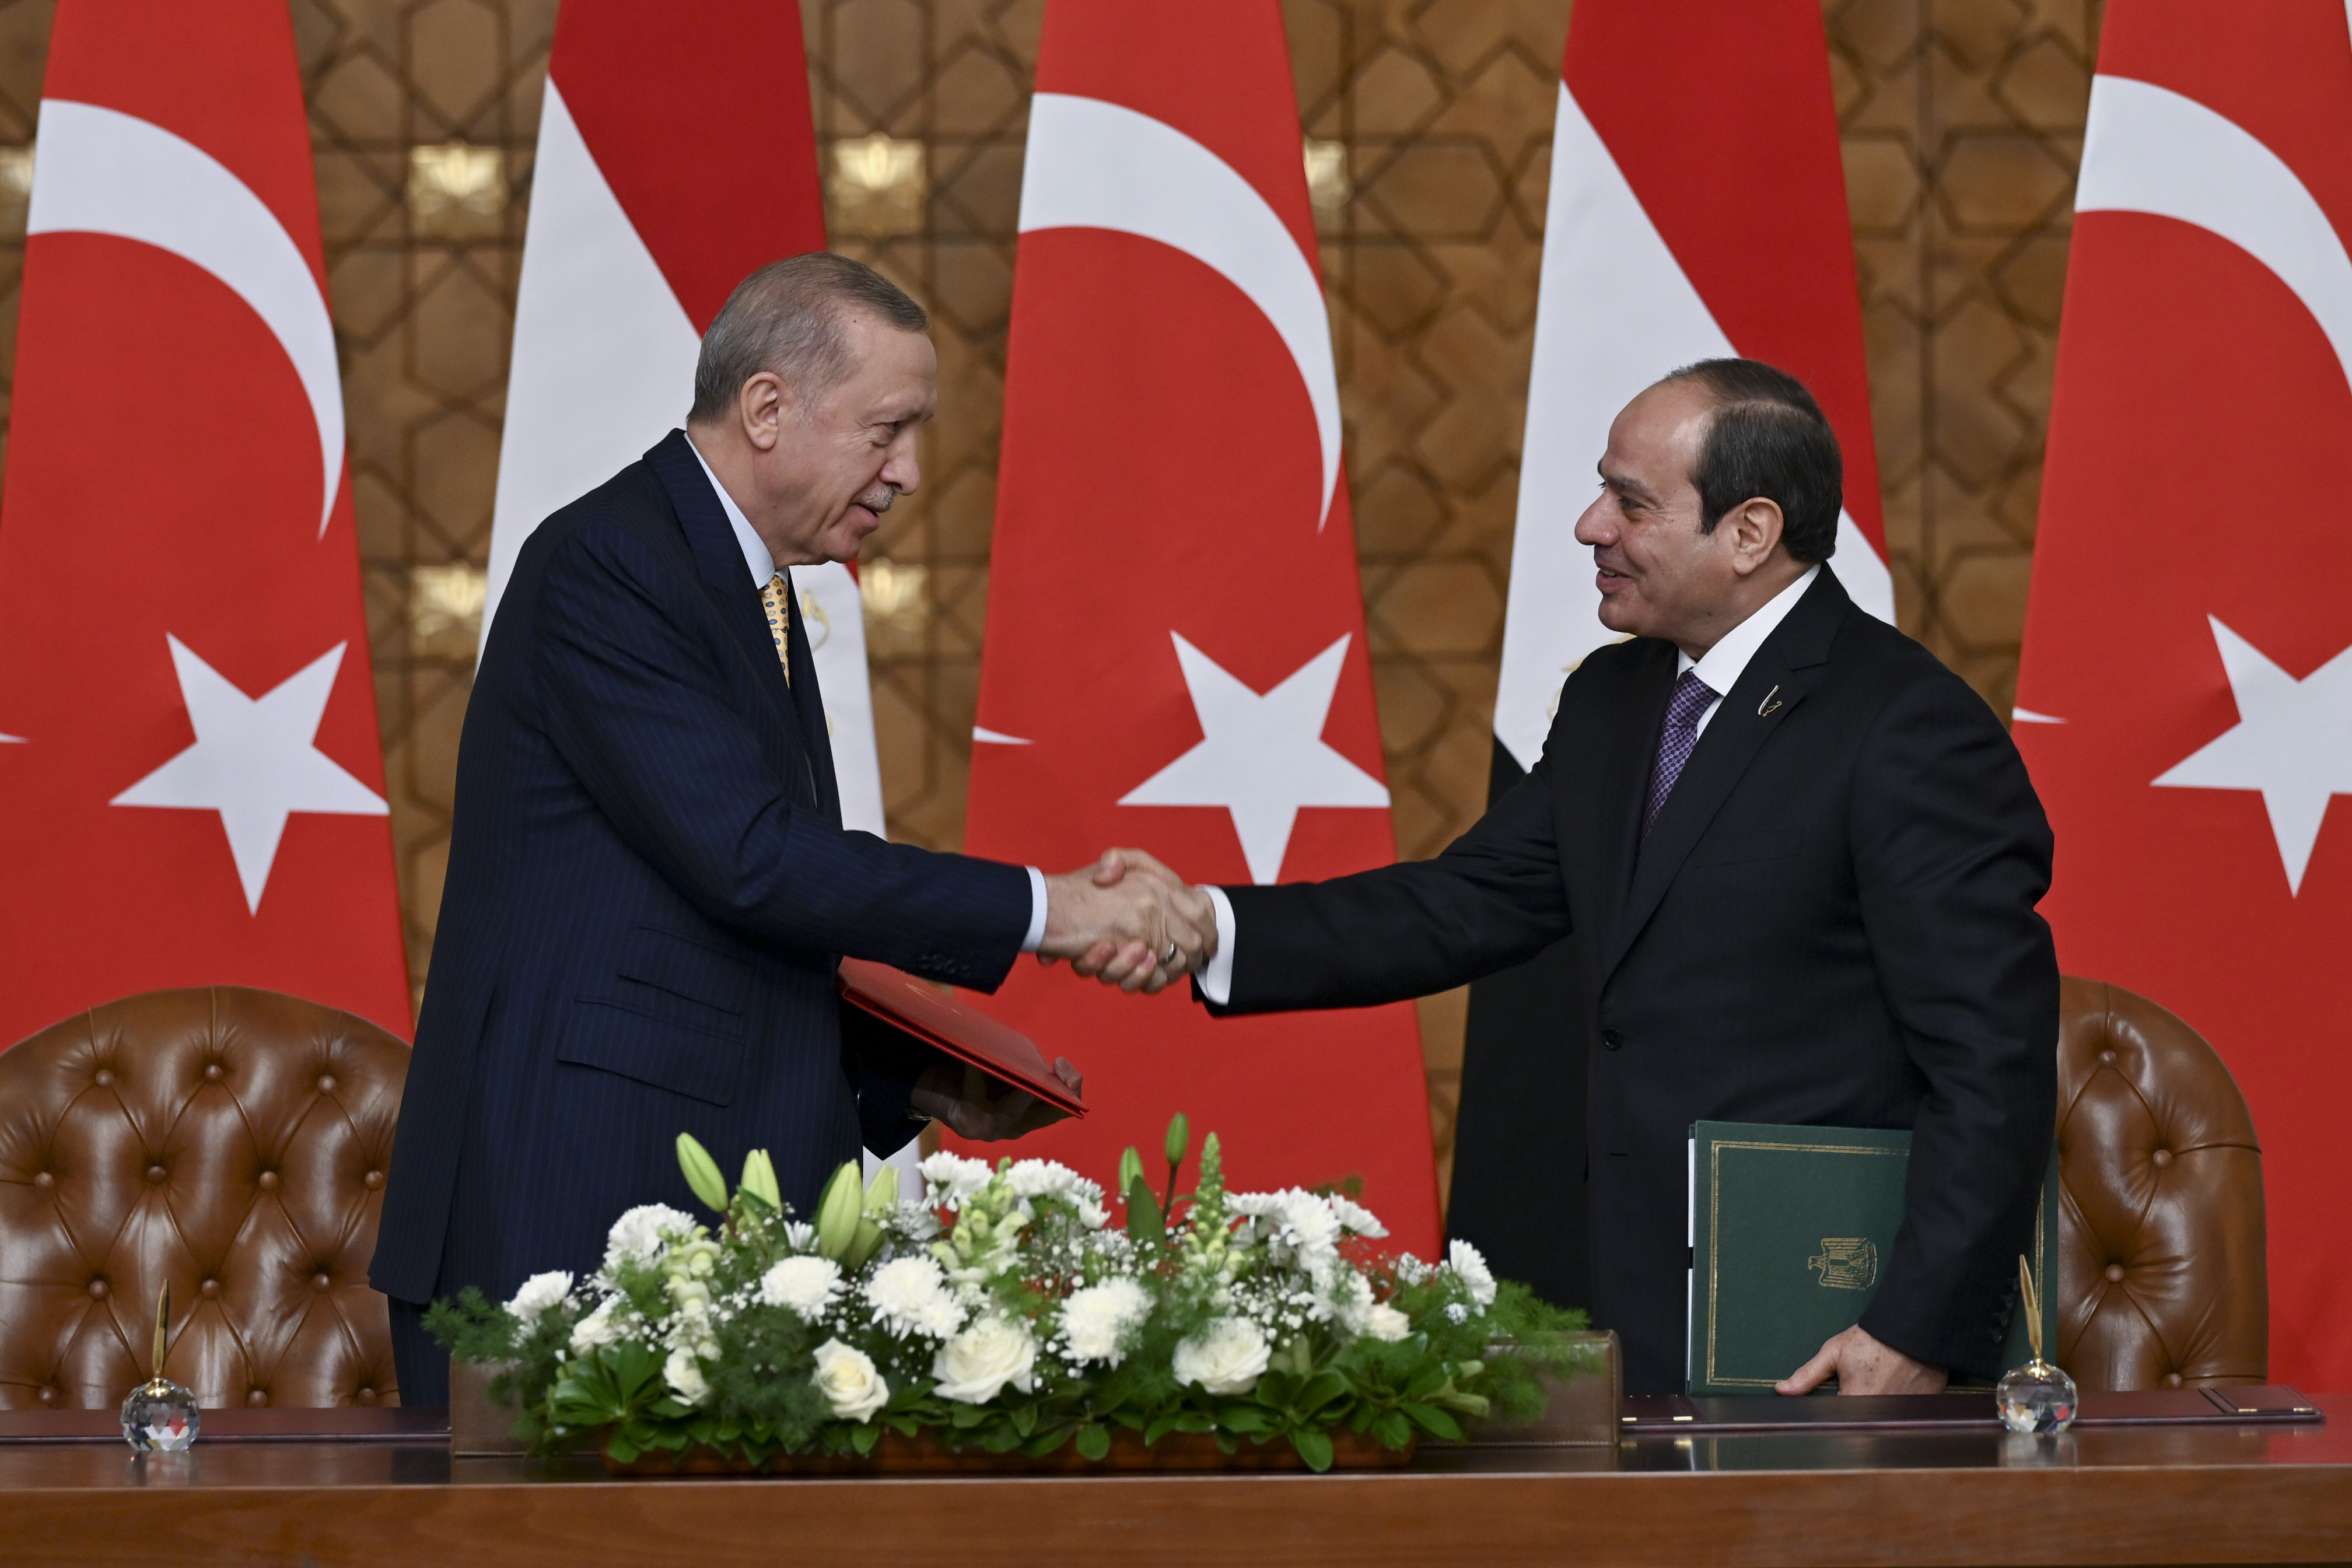 التقارب التركي المصري: التحديات والمصالح المشتركة